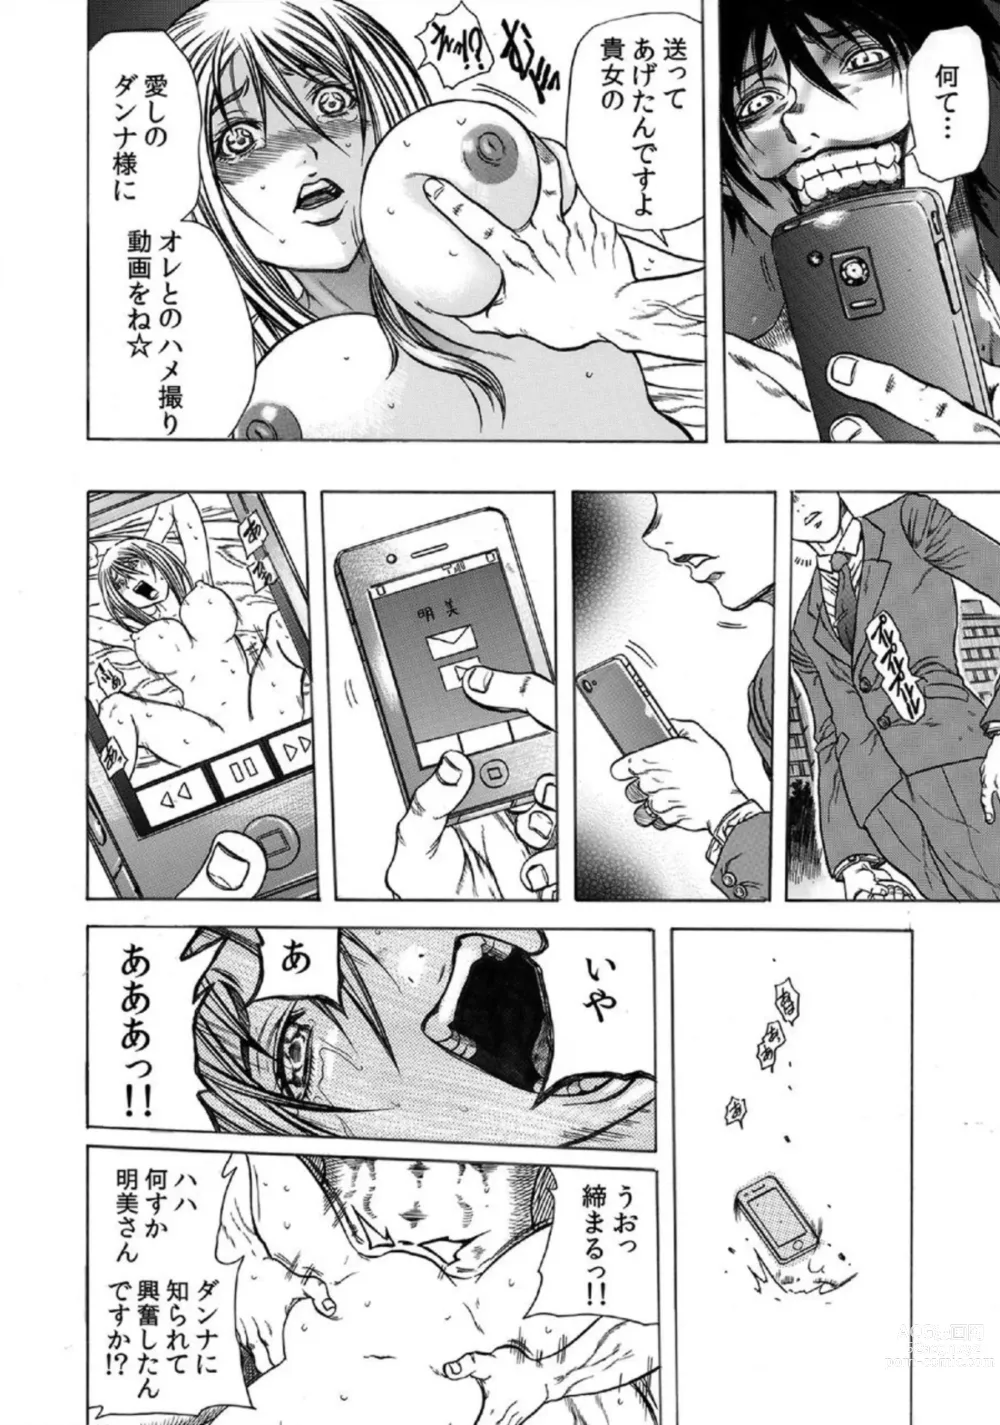 Page 29 of manga Tonarinookusan O Kachiku Ni Suru 13 No Hōhō 1